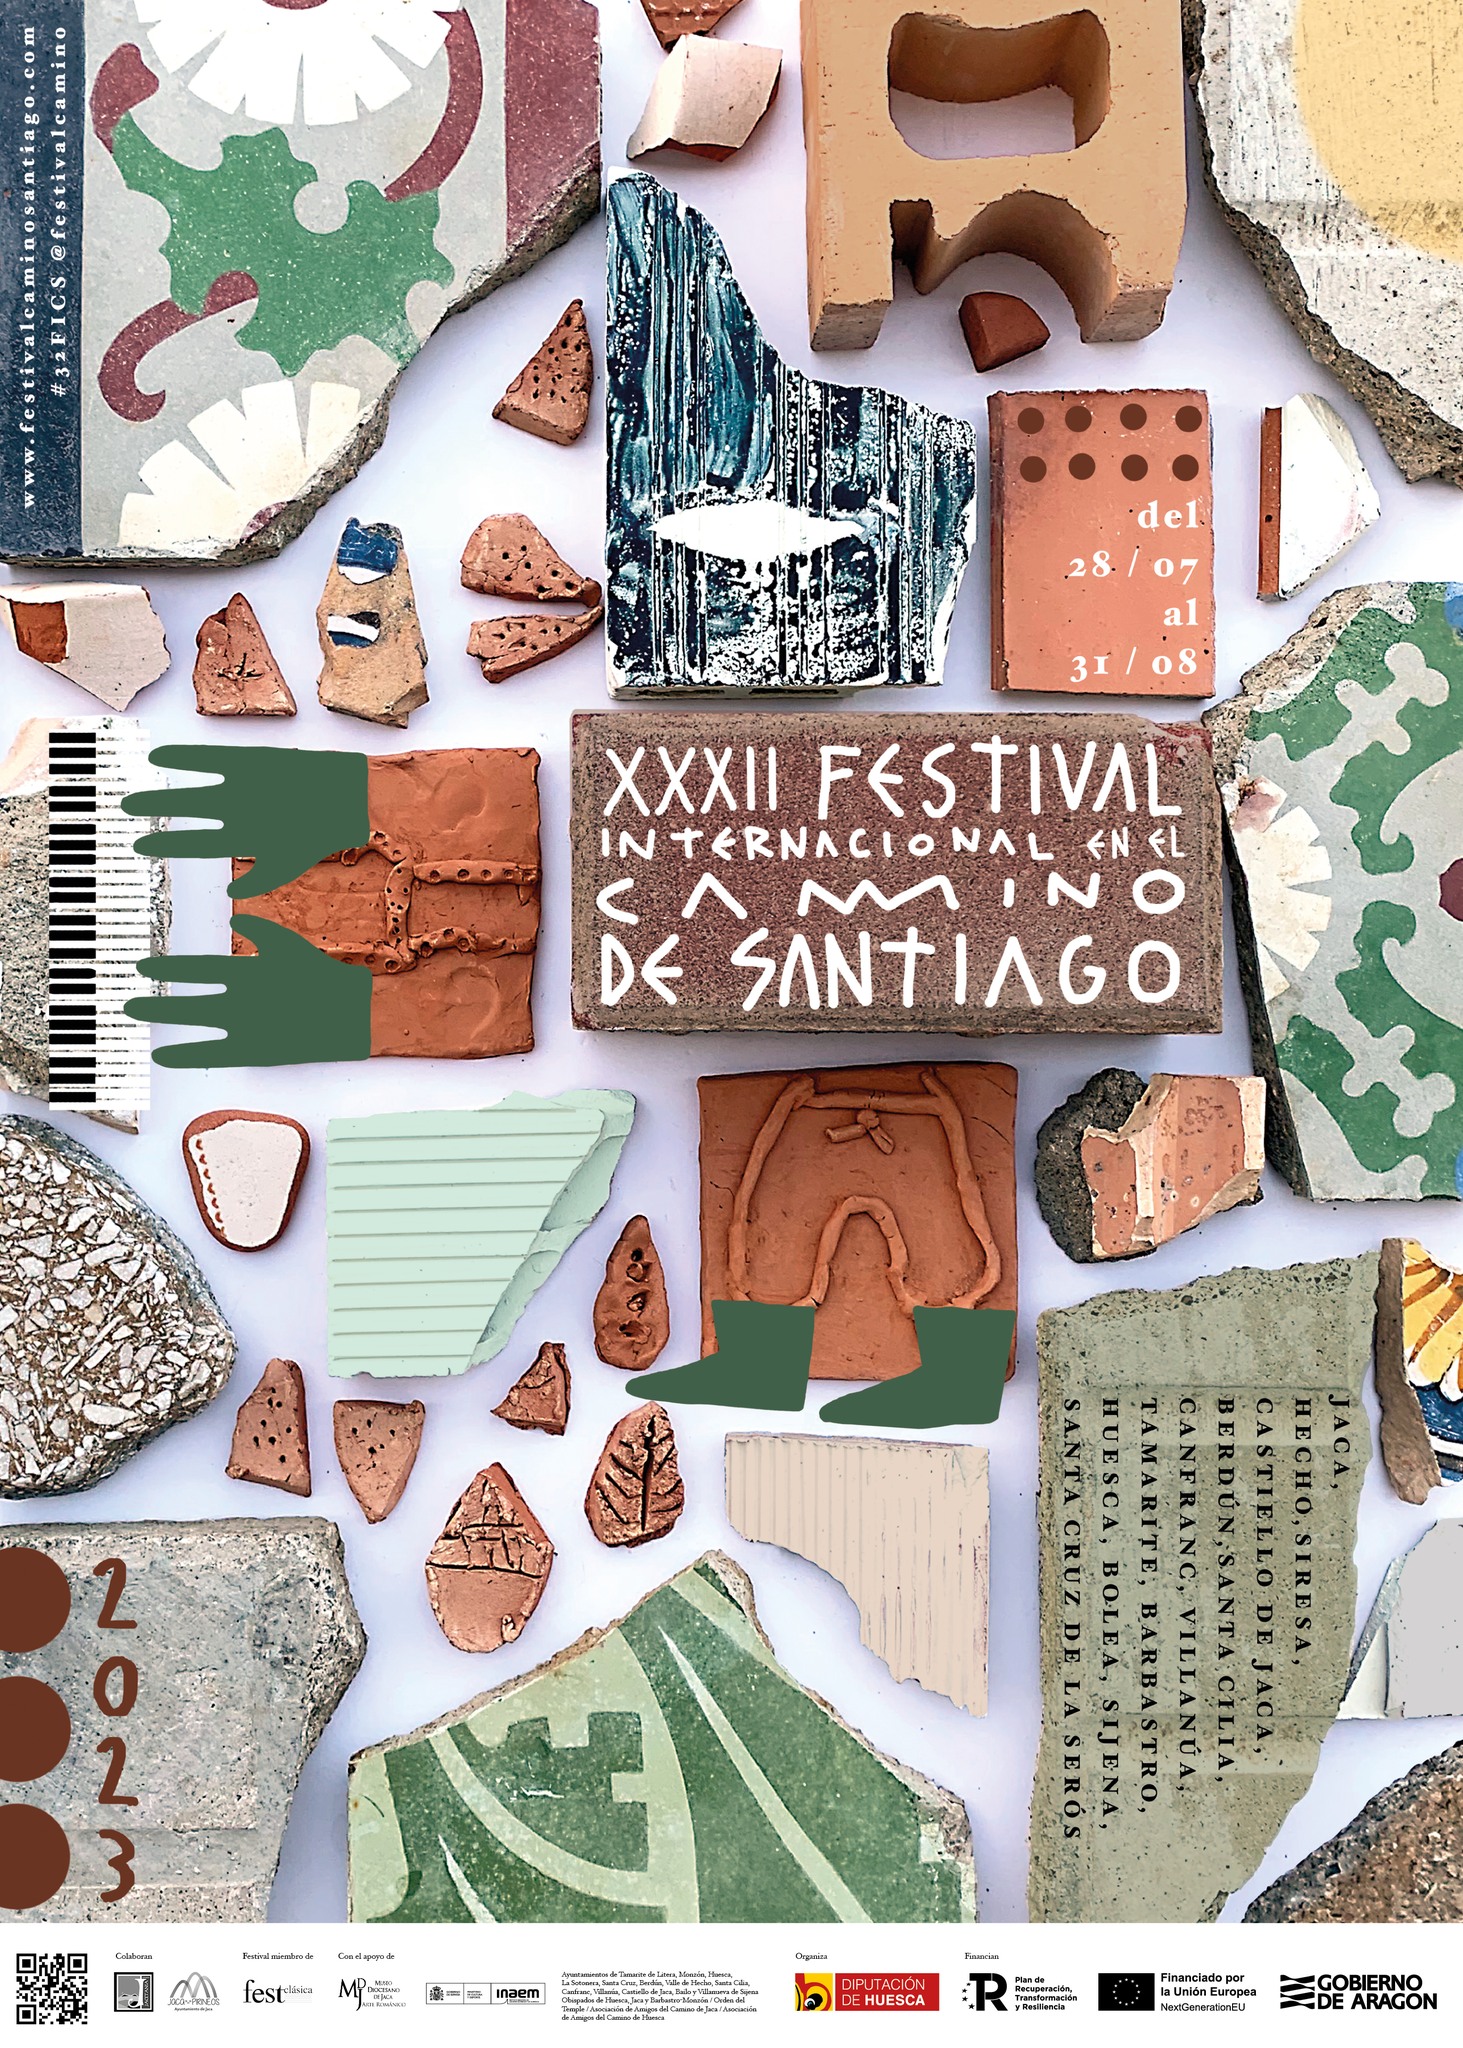 El XXXII Festival Internacional en el Camino de Santiago se dedicará a la fiesta y la música de los siglos XII al XVIII